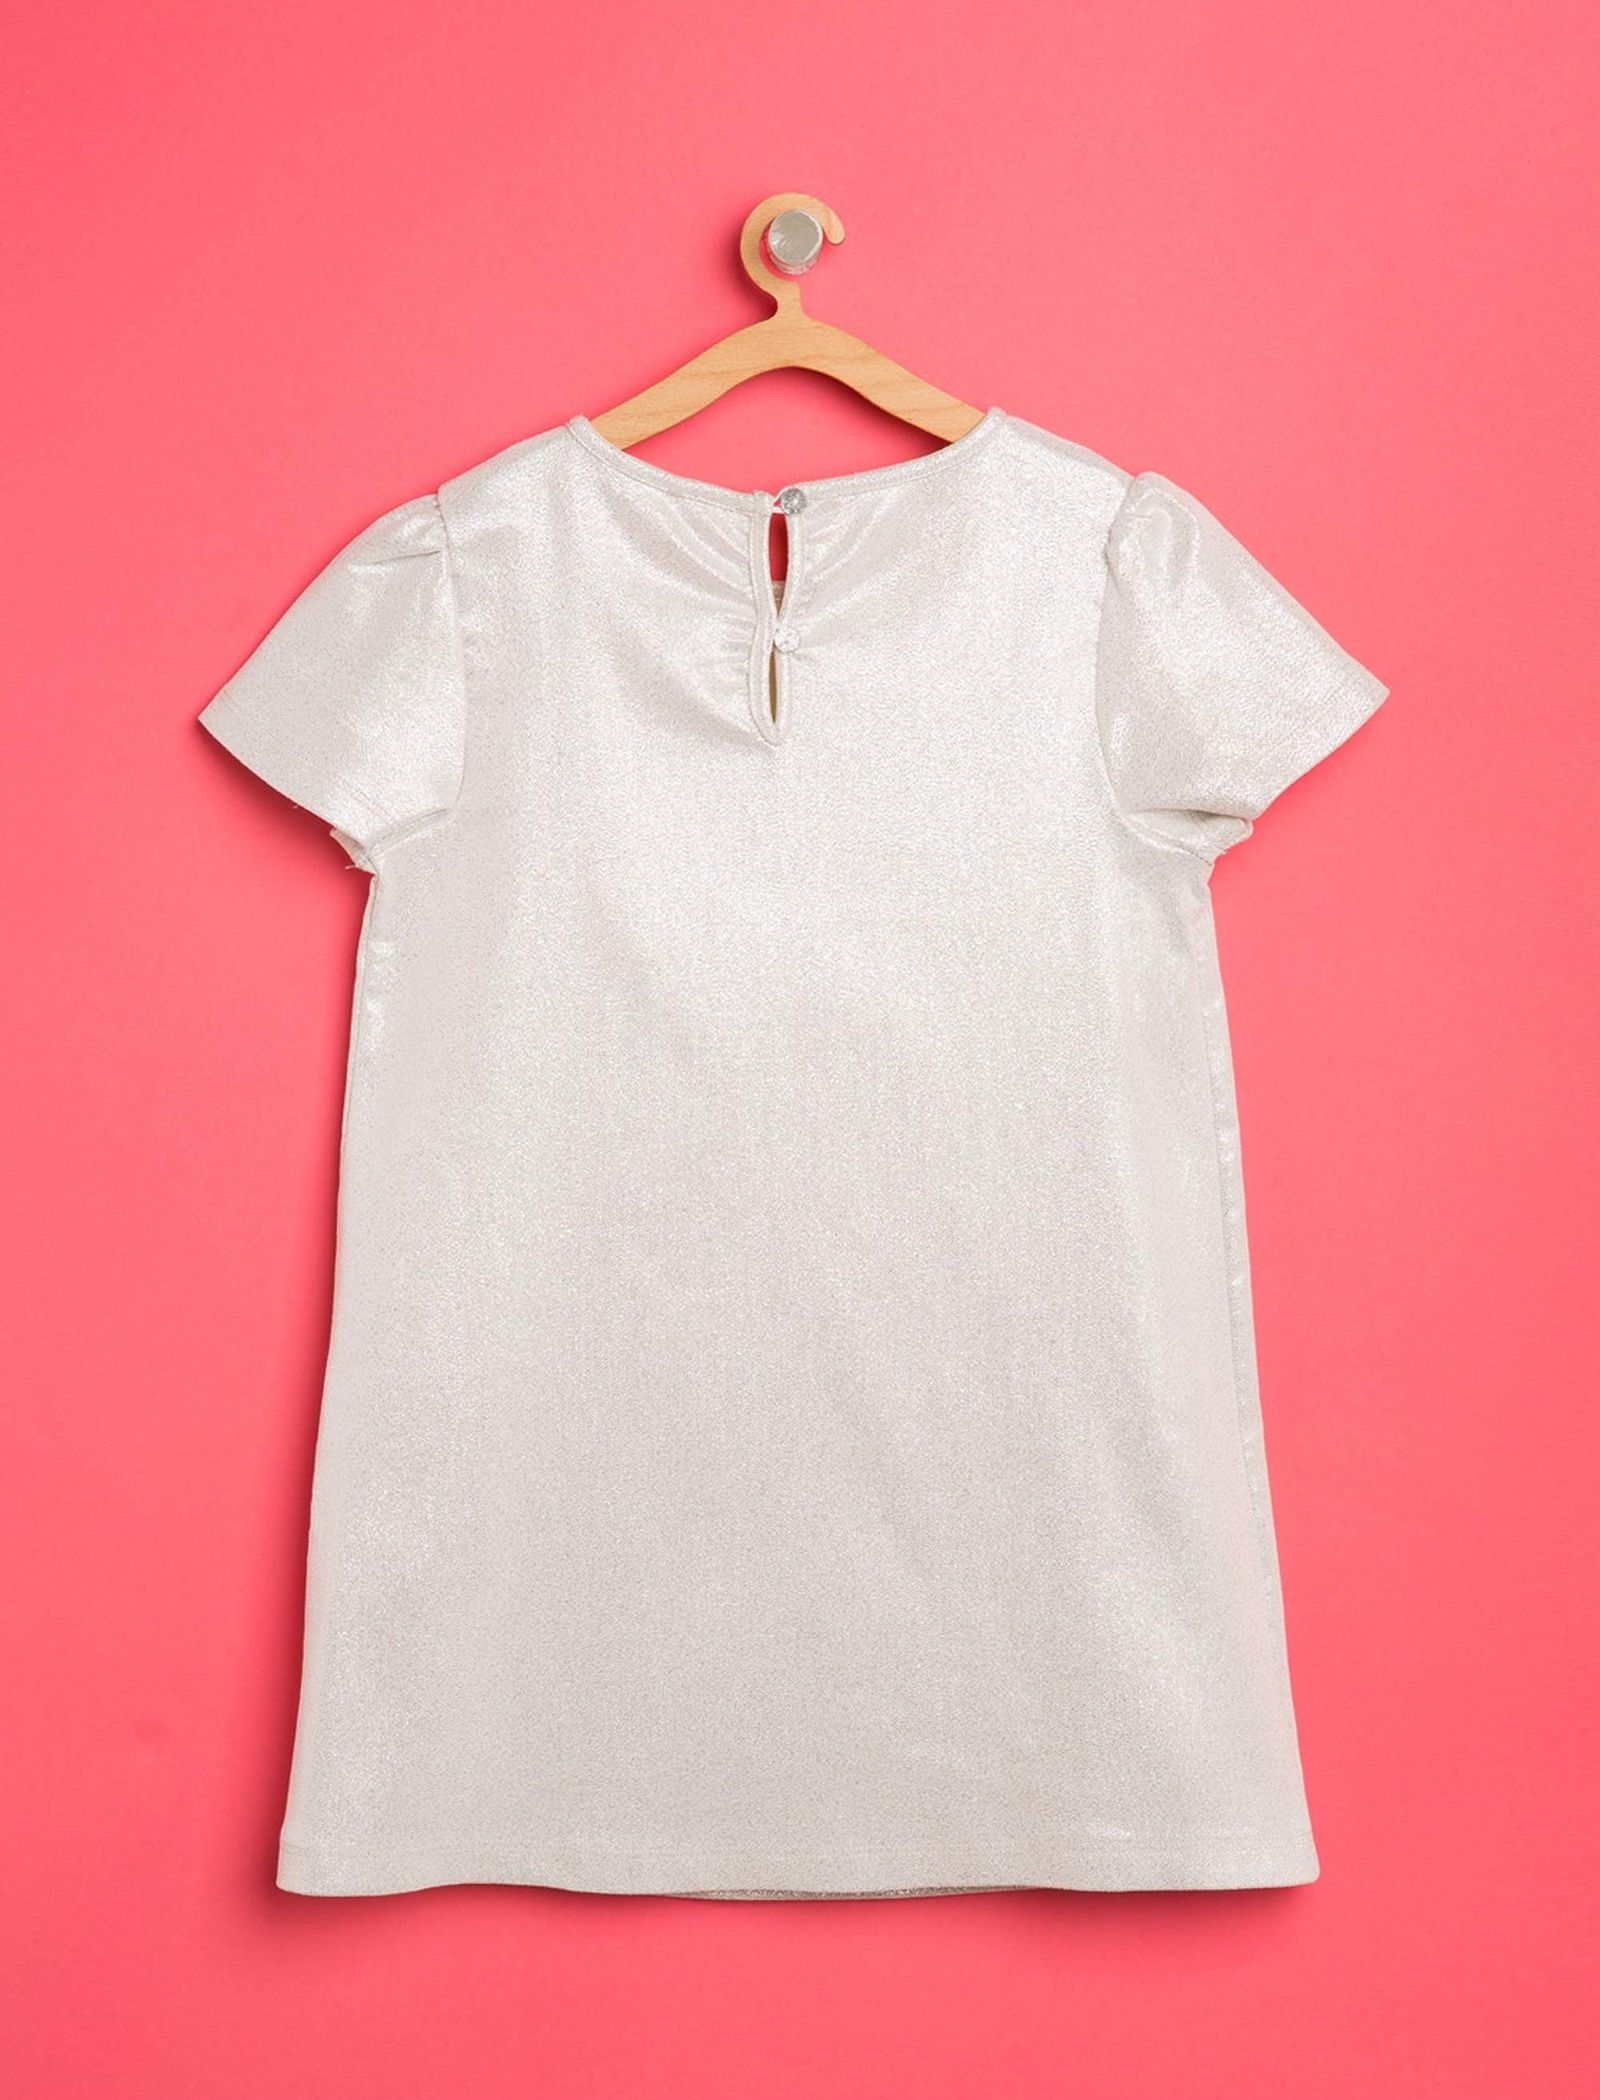 پیراهن روزمره دخترانه - کوتون - طوسي روشن - 3